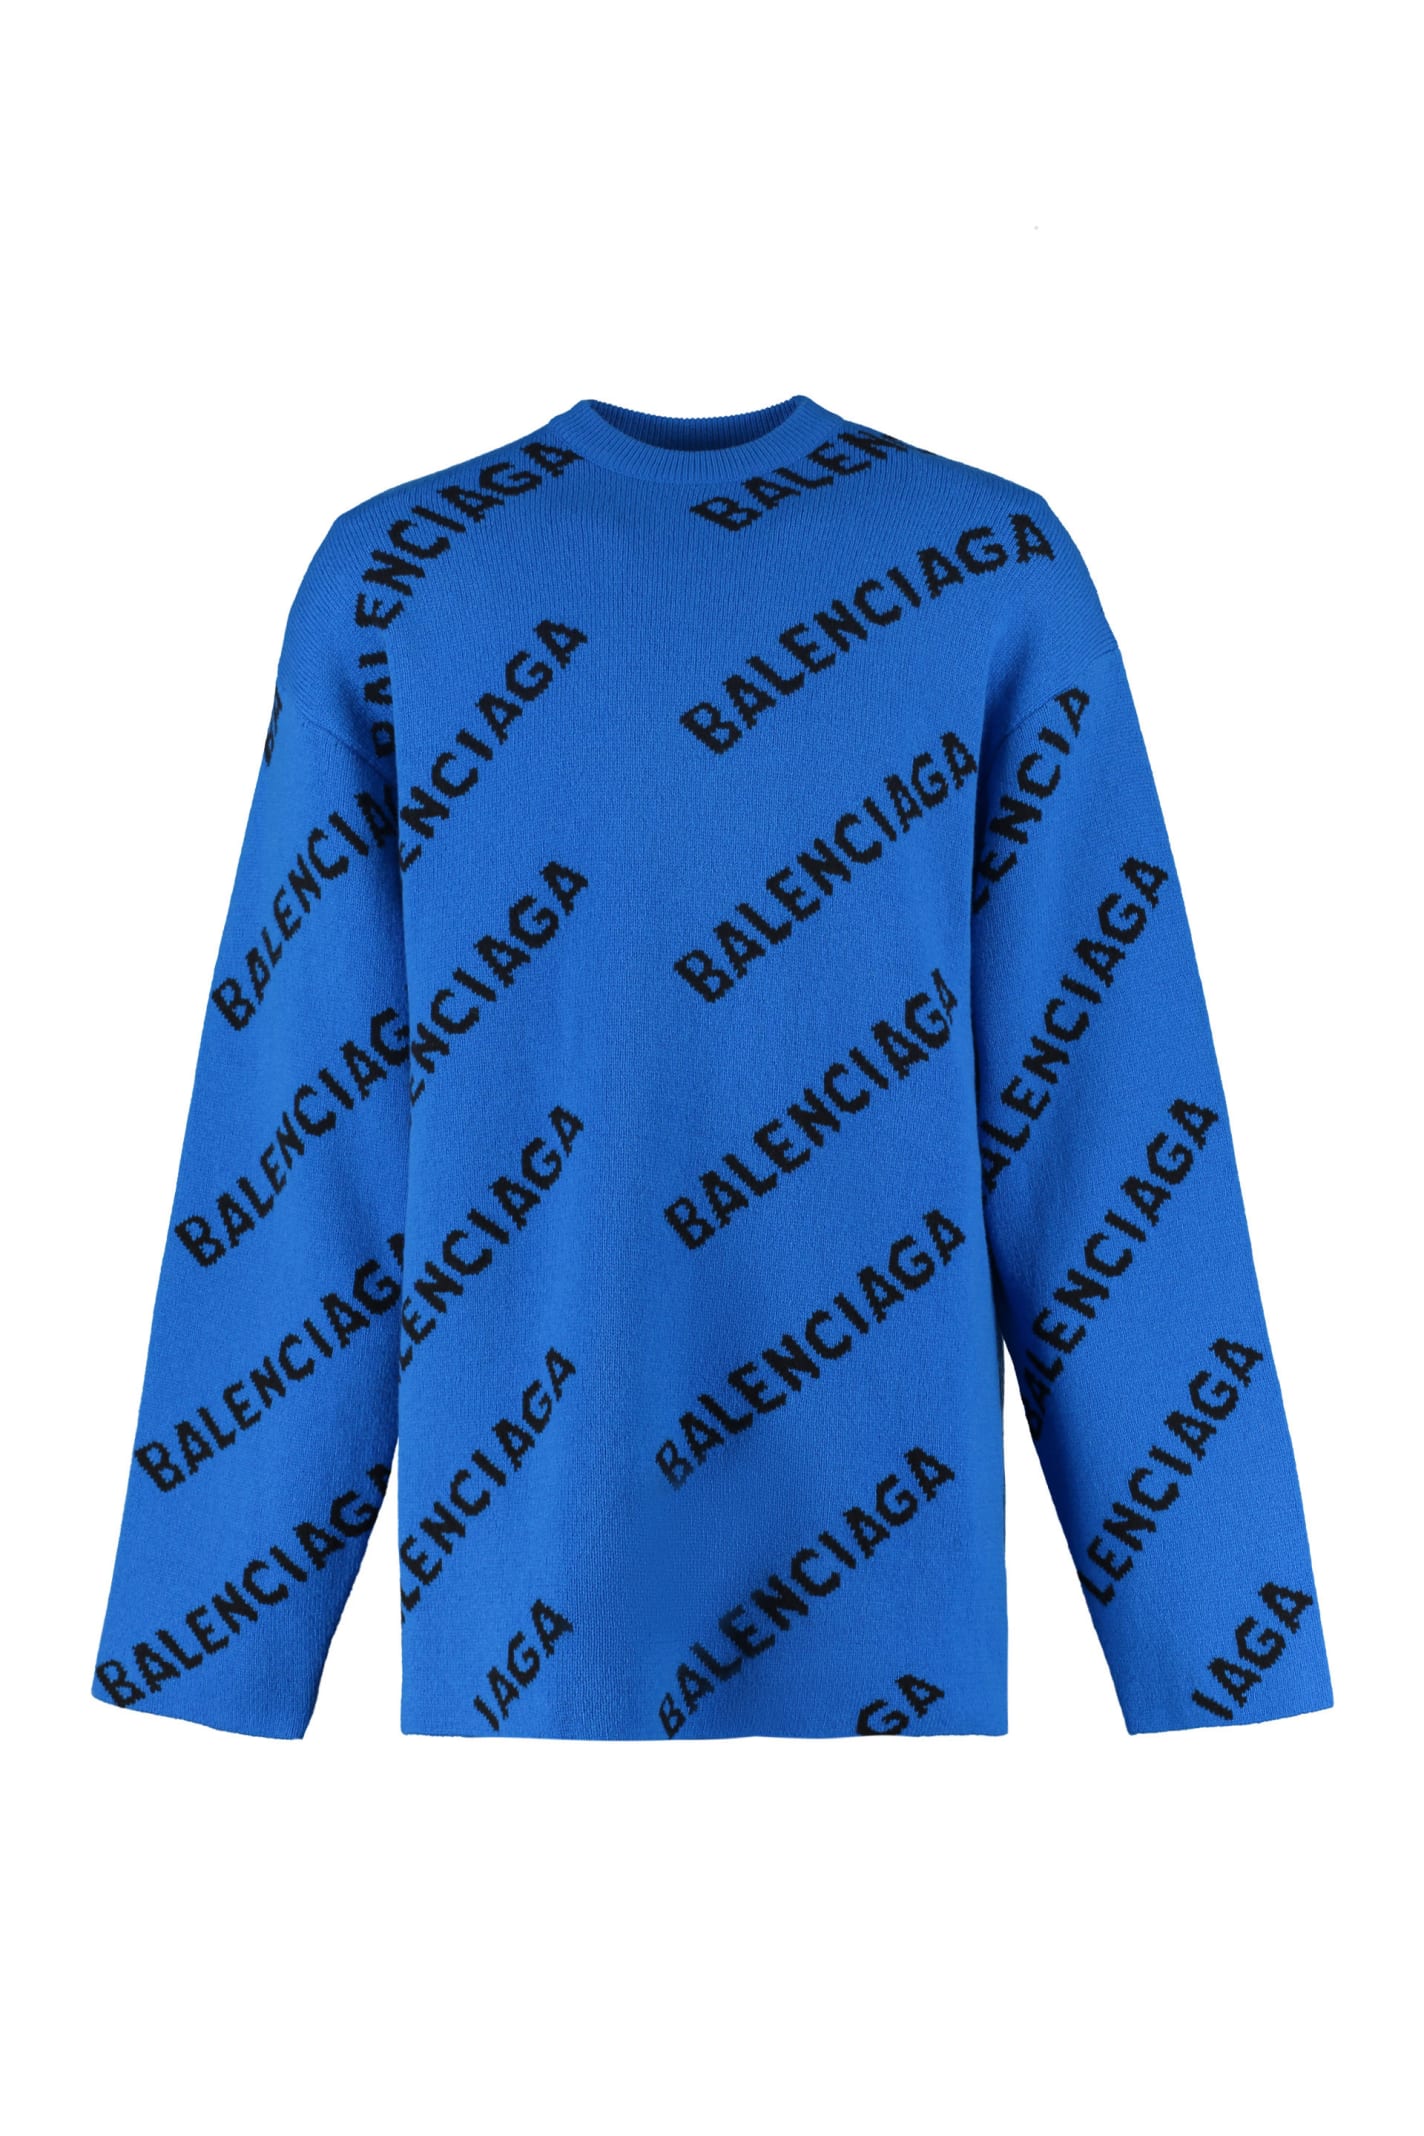 Balenciaga Jacquard Crew-neck Sweater